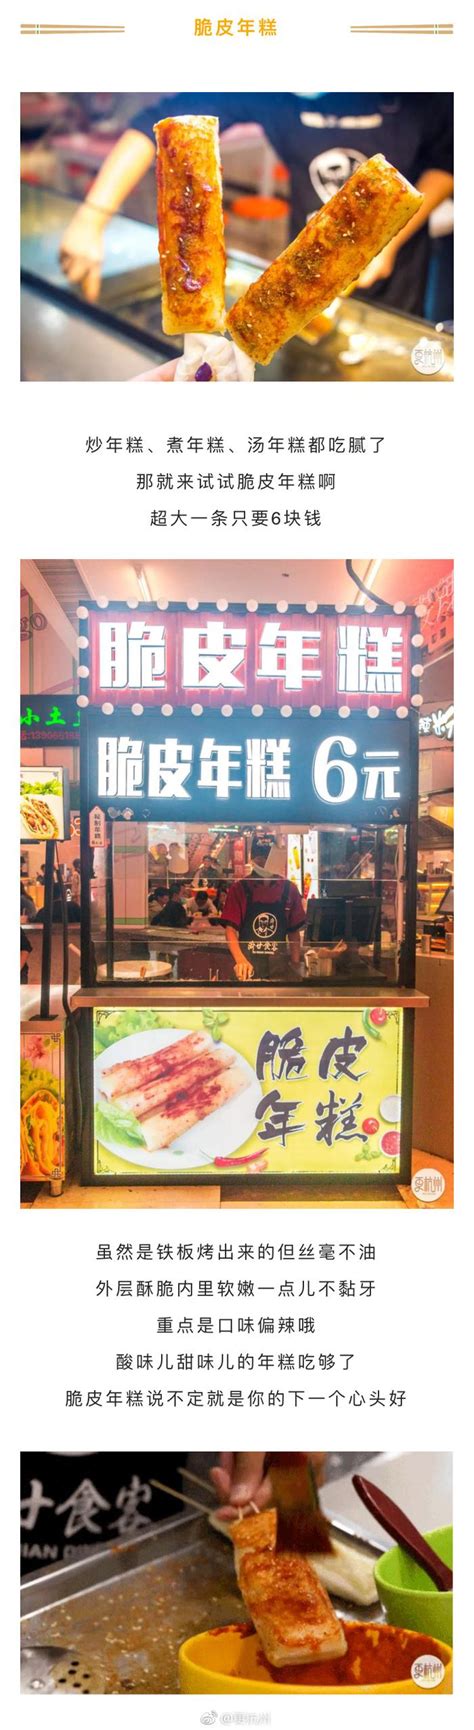 2024香港名店街(人民大道店)购物,经典小吃铺面。地铁站内入口...【去哪儿攻略】